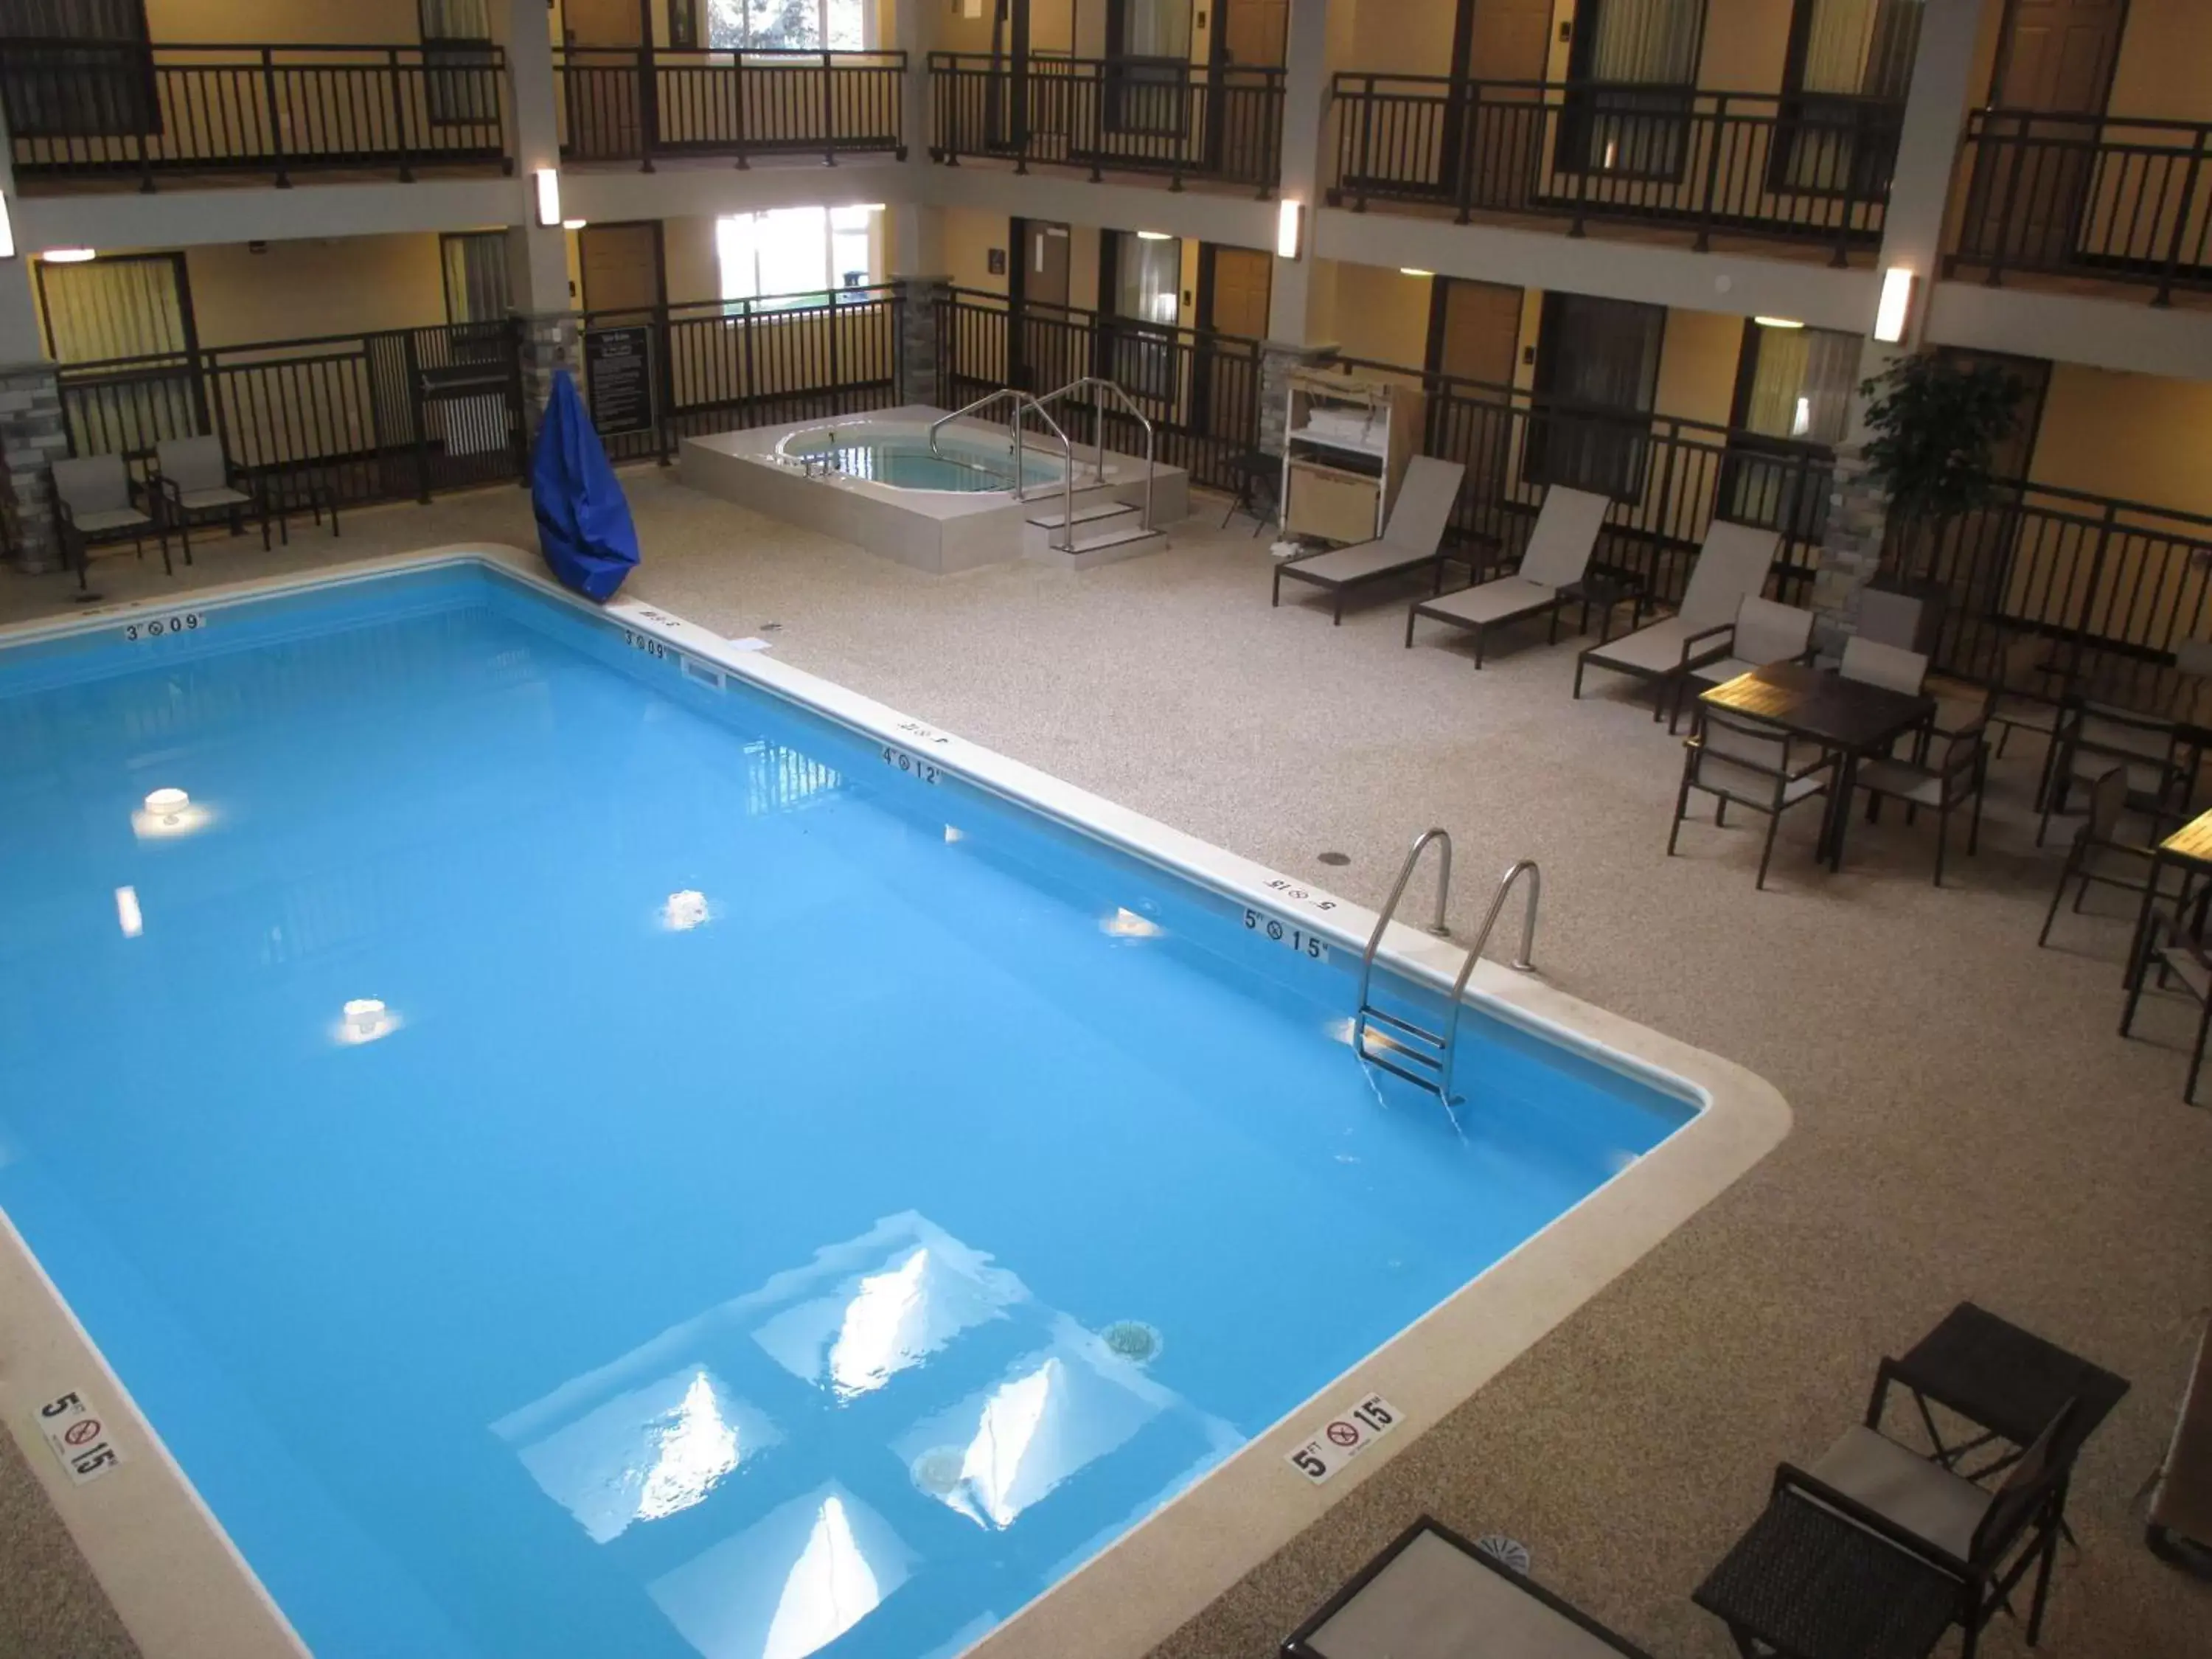 On site, Pool View in Best Western Harvest Inn & Suites